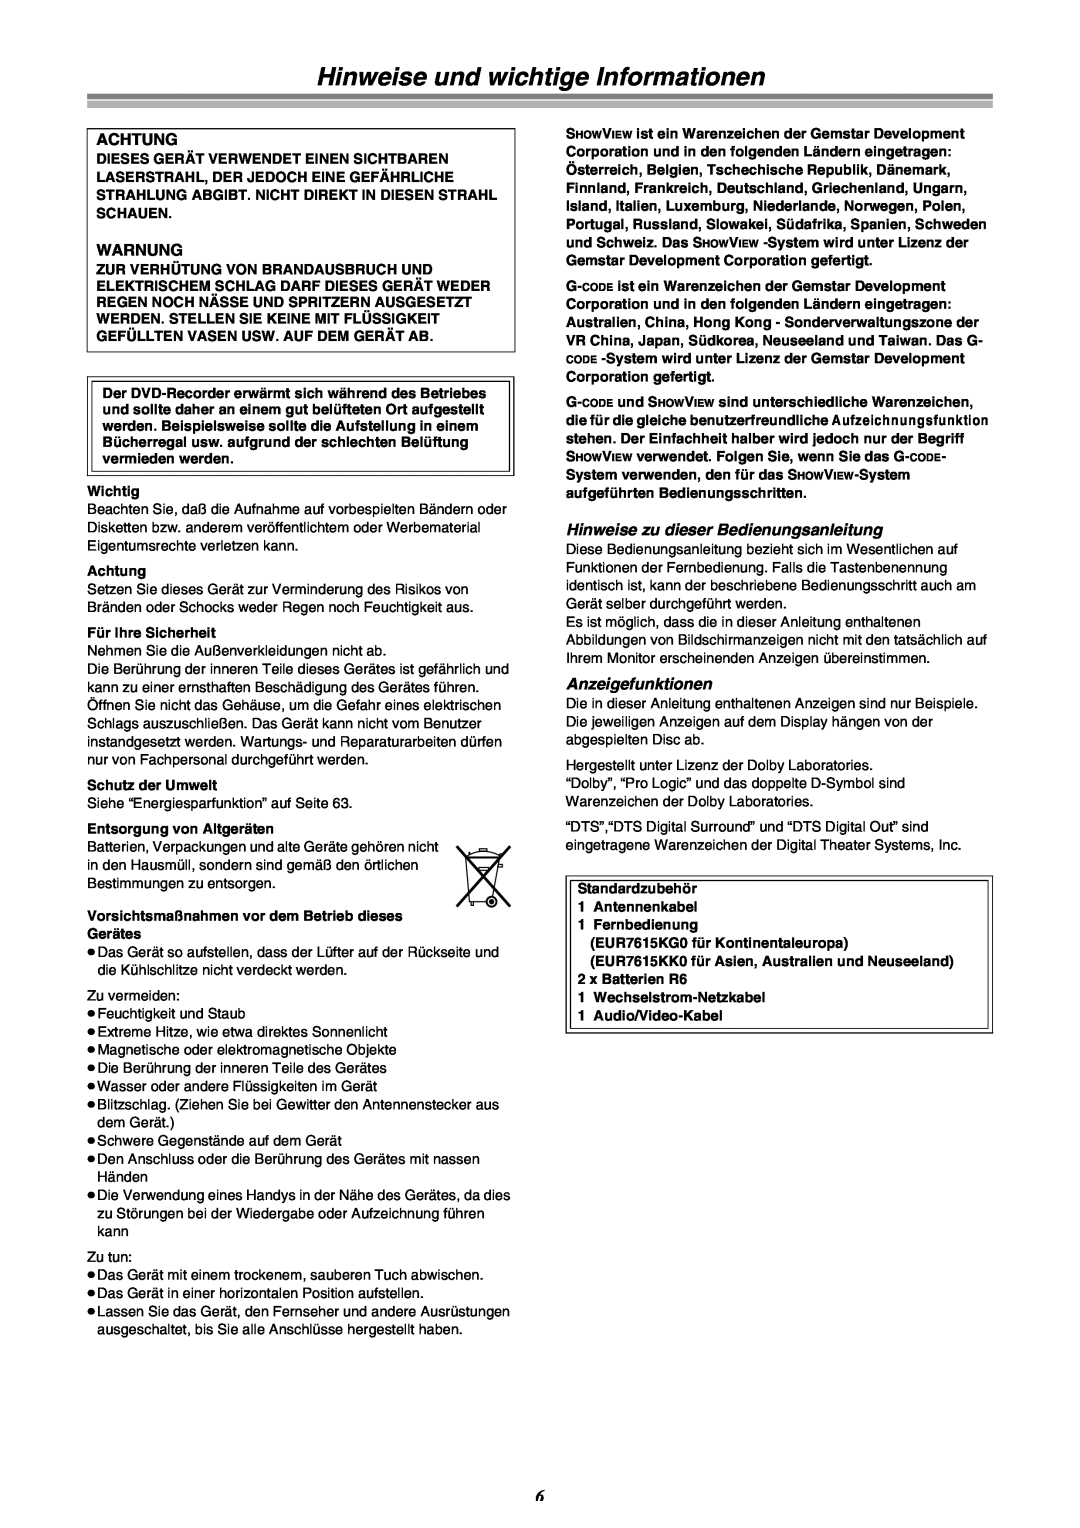 Panasonic DMR-E30 manual Hinweise und wichtige Informationen, Achtung, Warnung, Hinweise zu dieser Bedienungsanleitung 